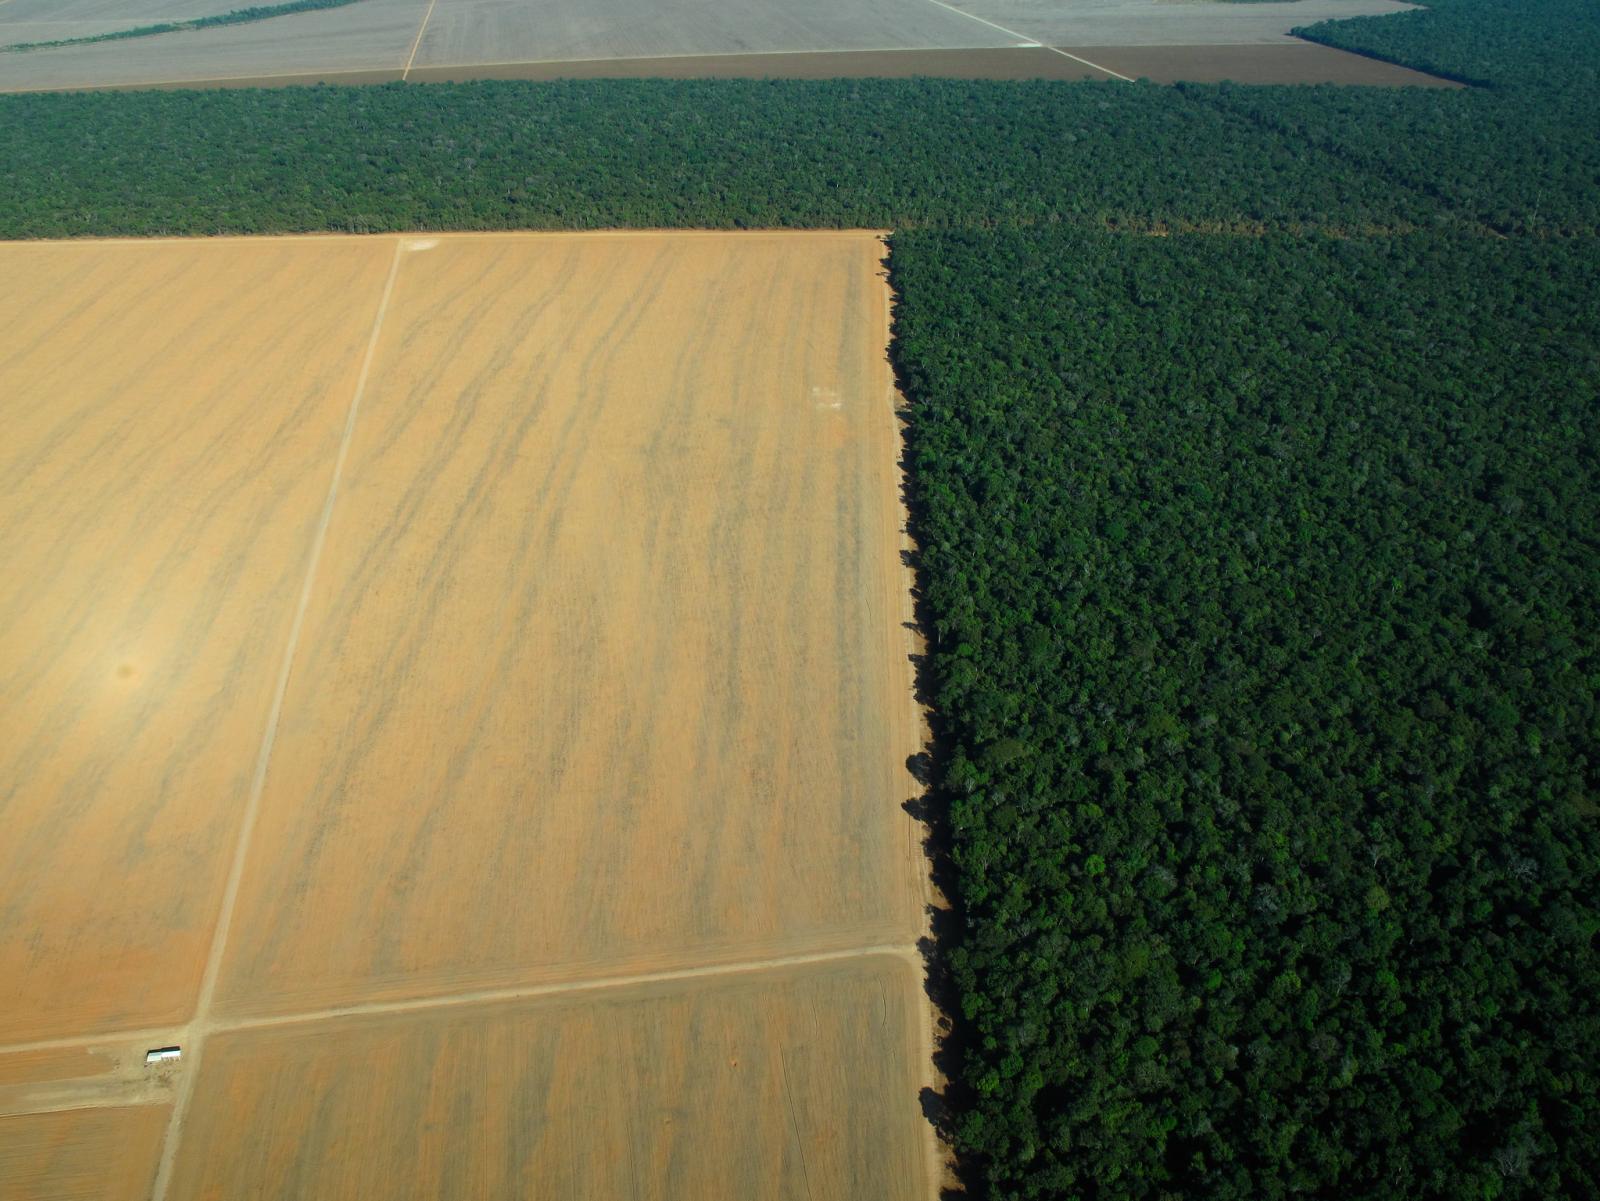 Se non è intensiva l’agricoltura sarà estensiva: ossia deforestazione